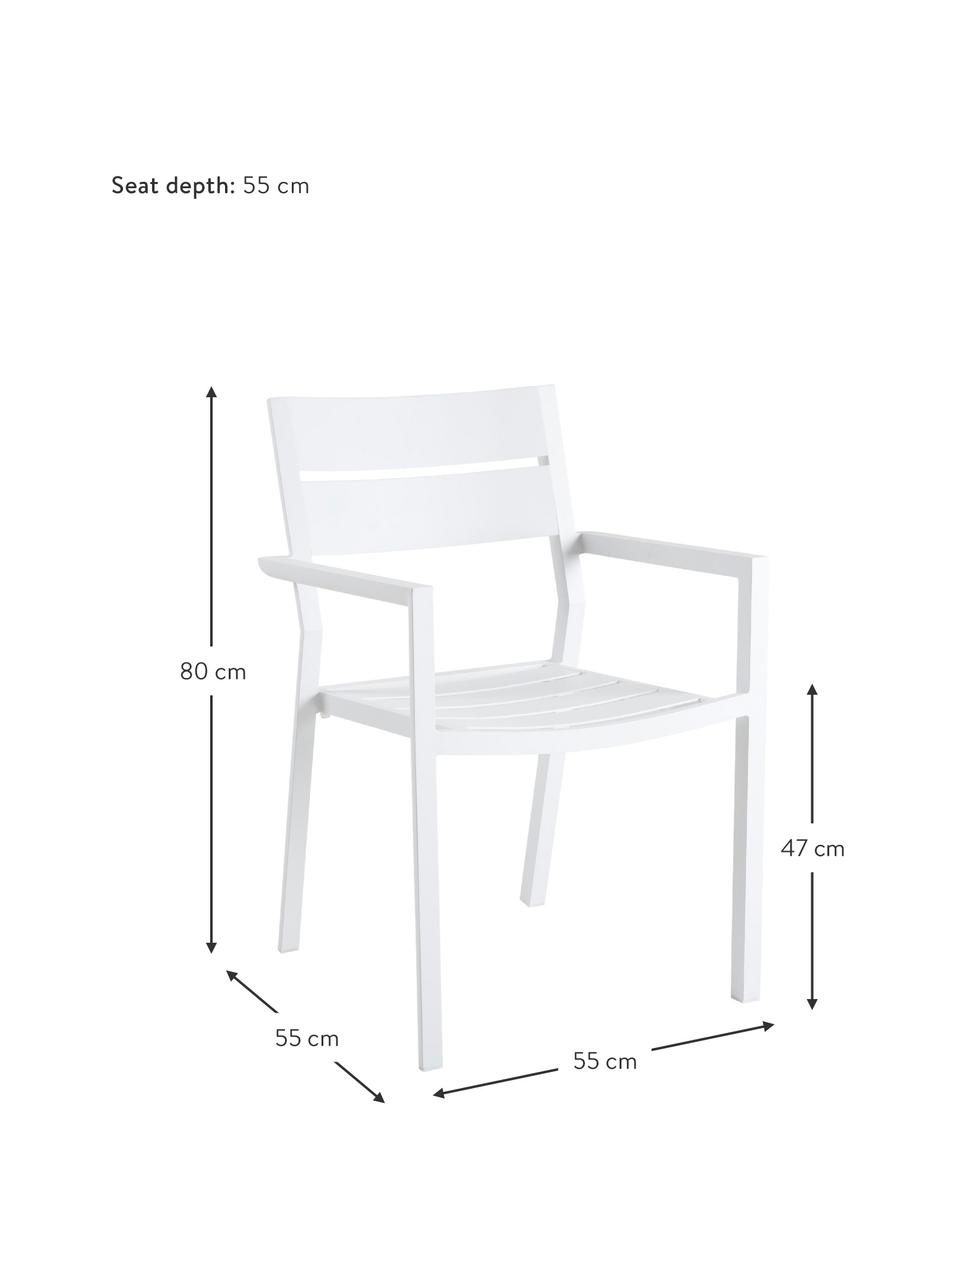 Fotel ogrodowy do układania w stos Adele, Aluminium malowane proszkowo, Biały, S 55 x G 55 cm